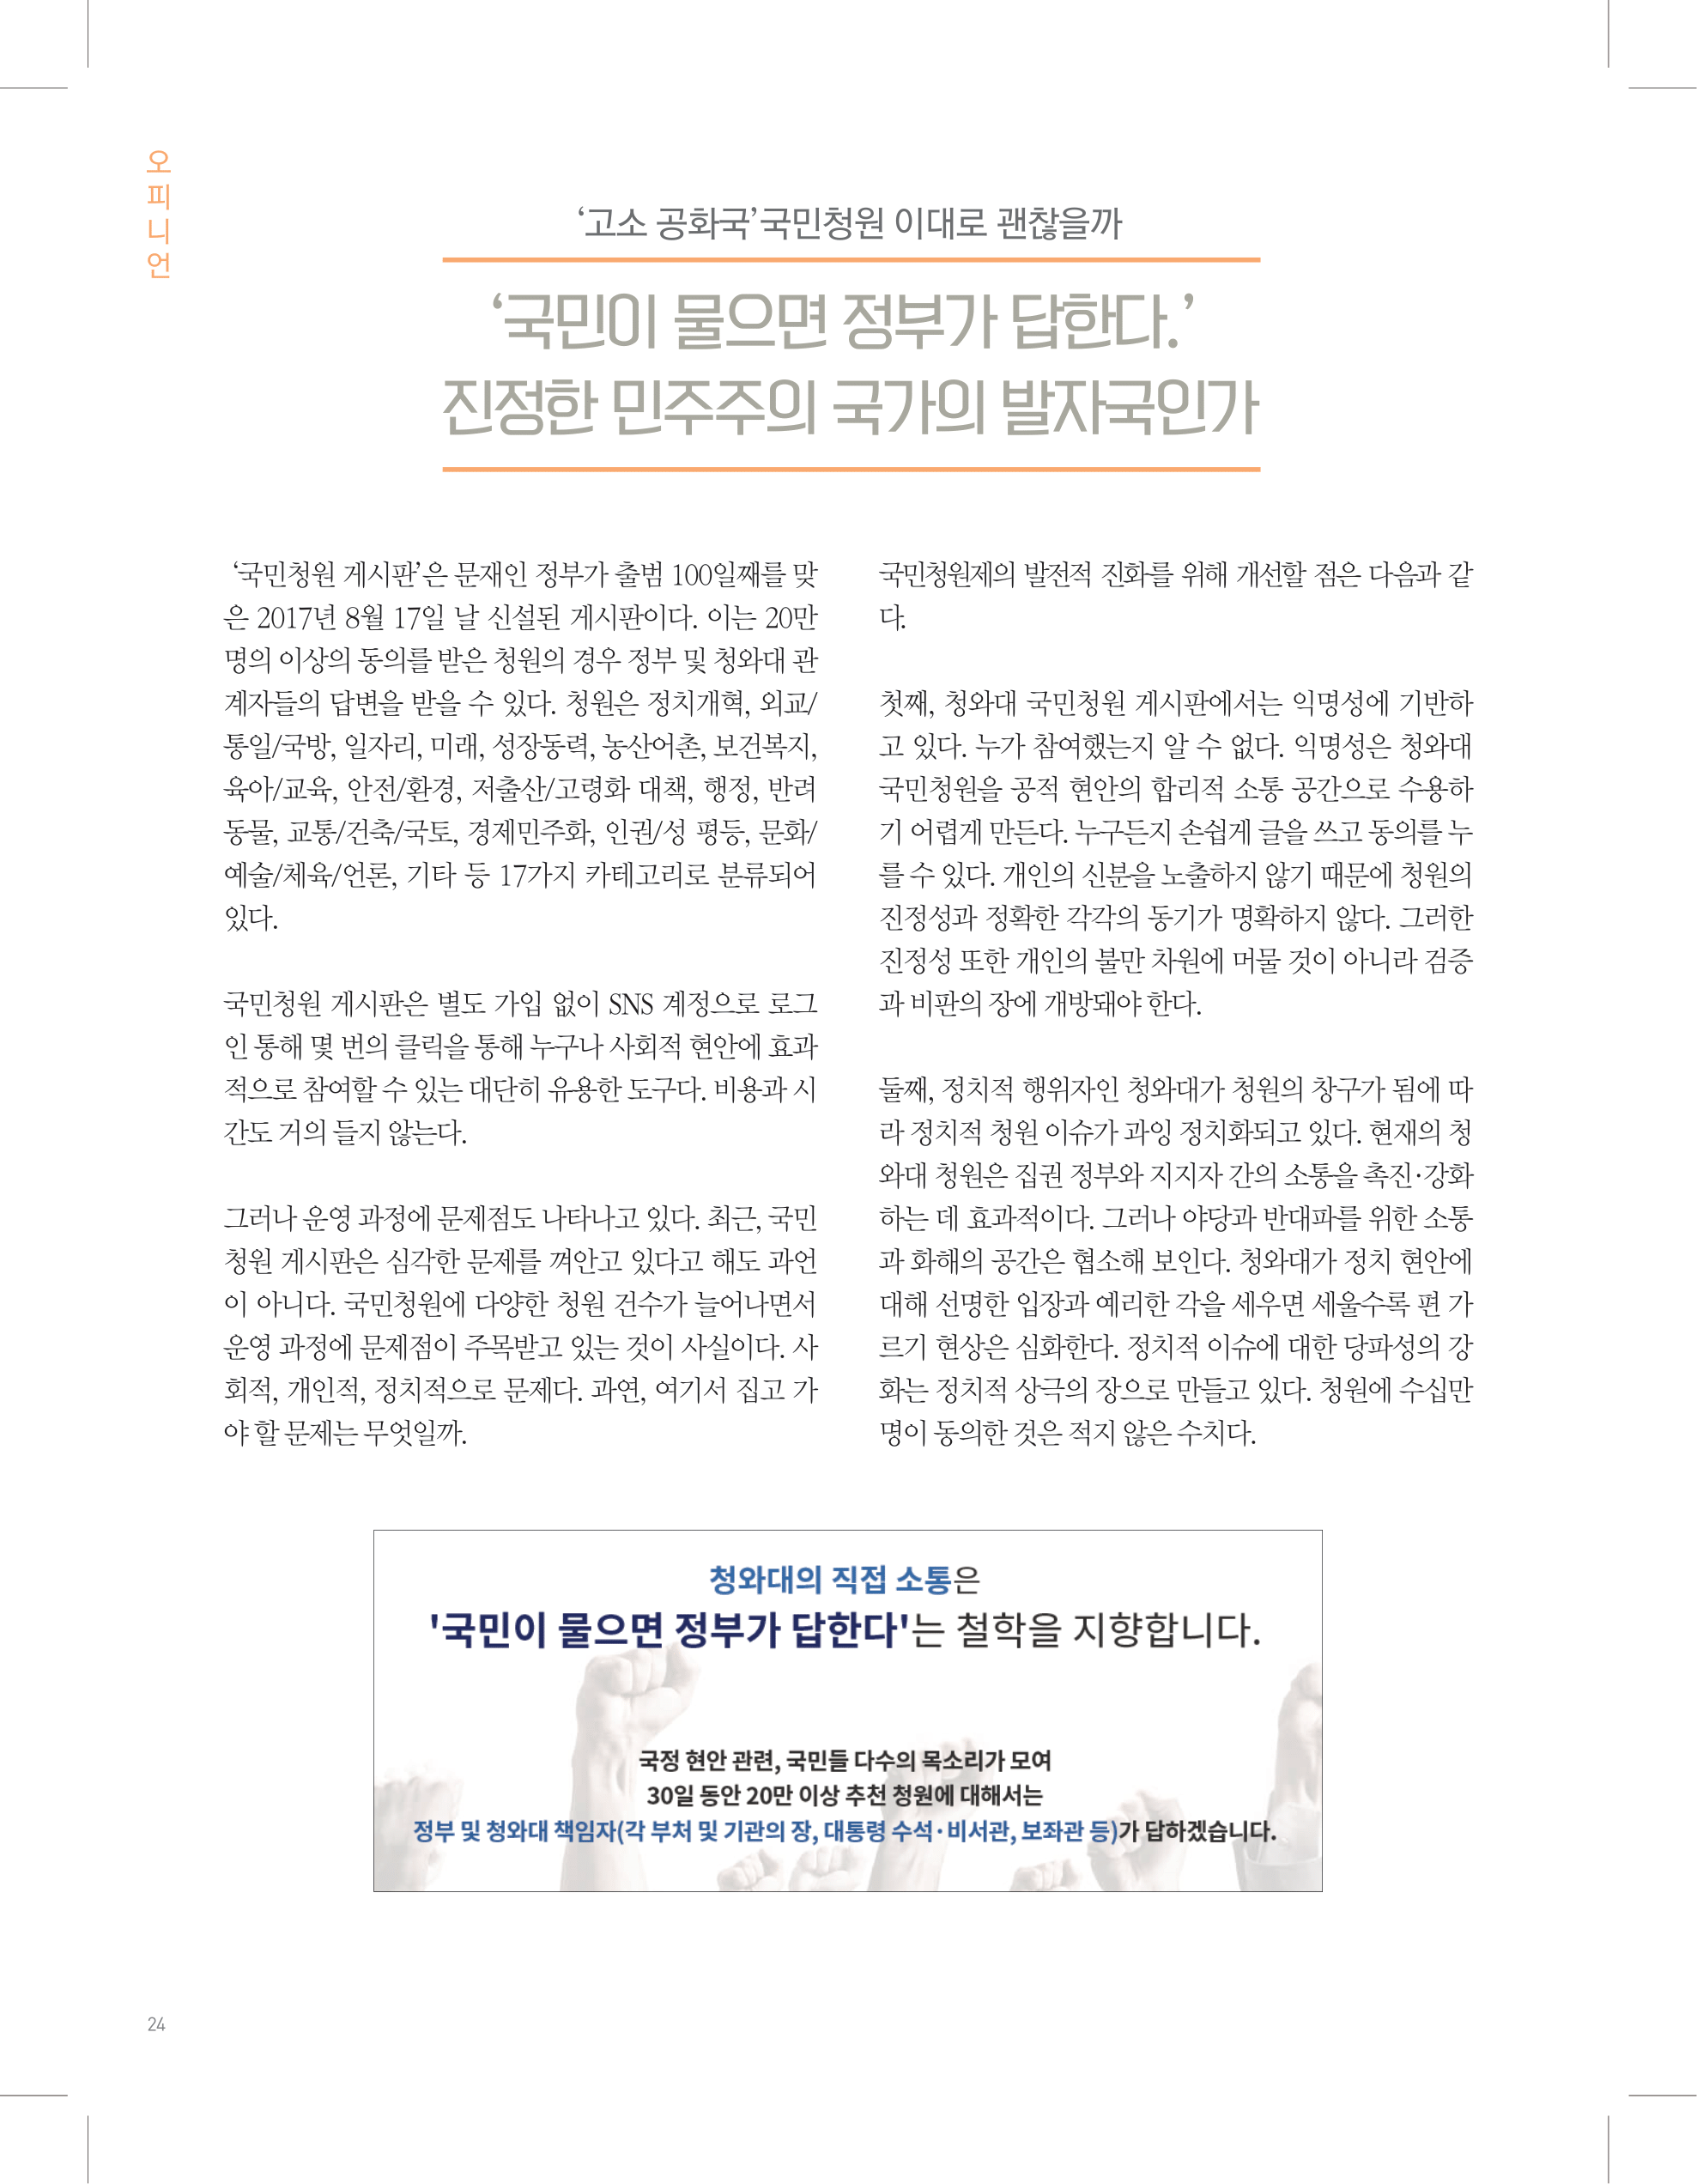 뜻새김 신문 73호 24